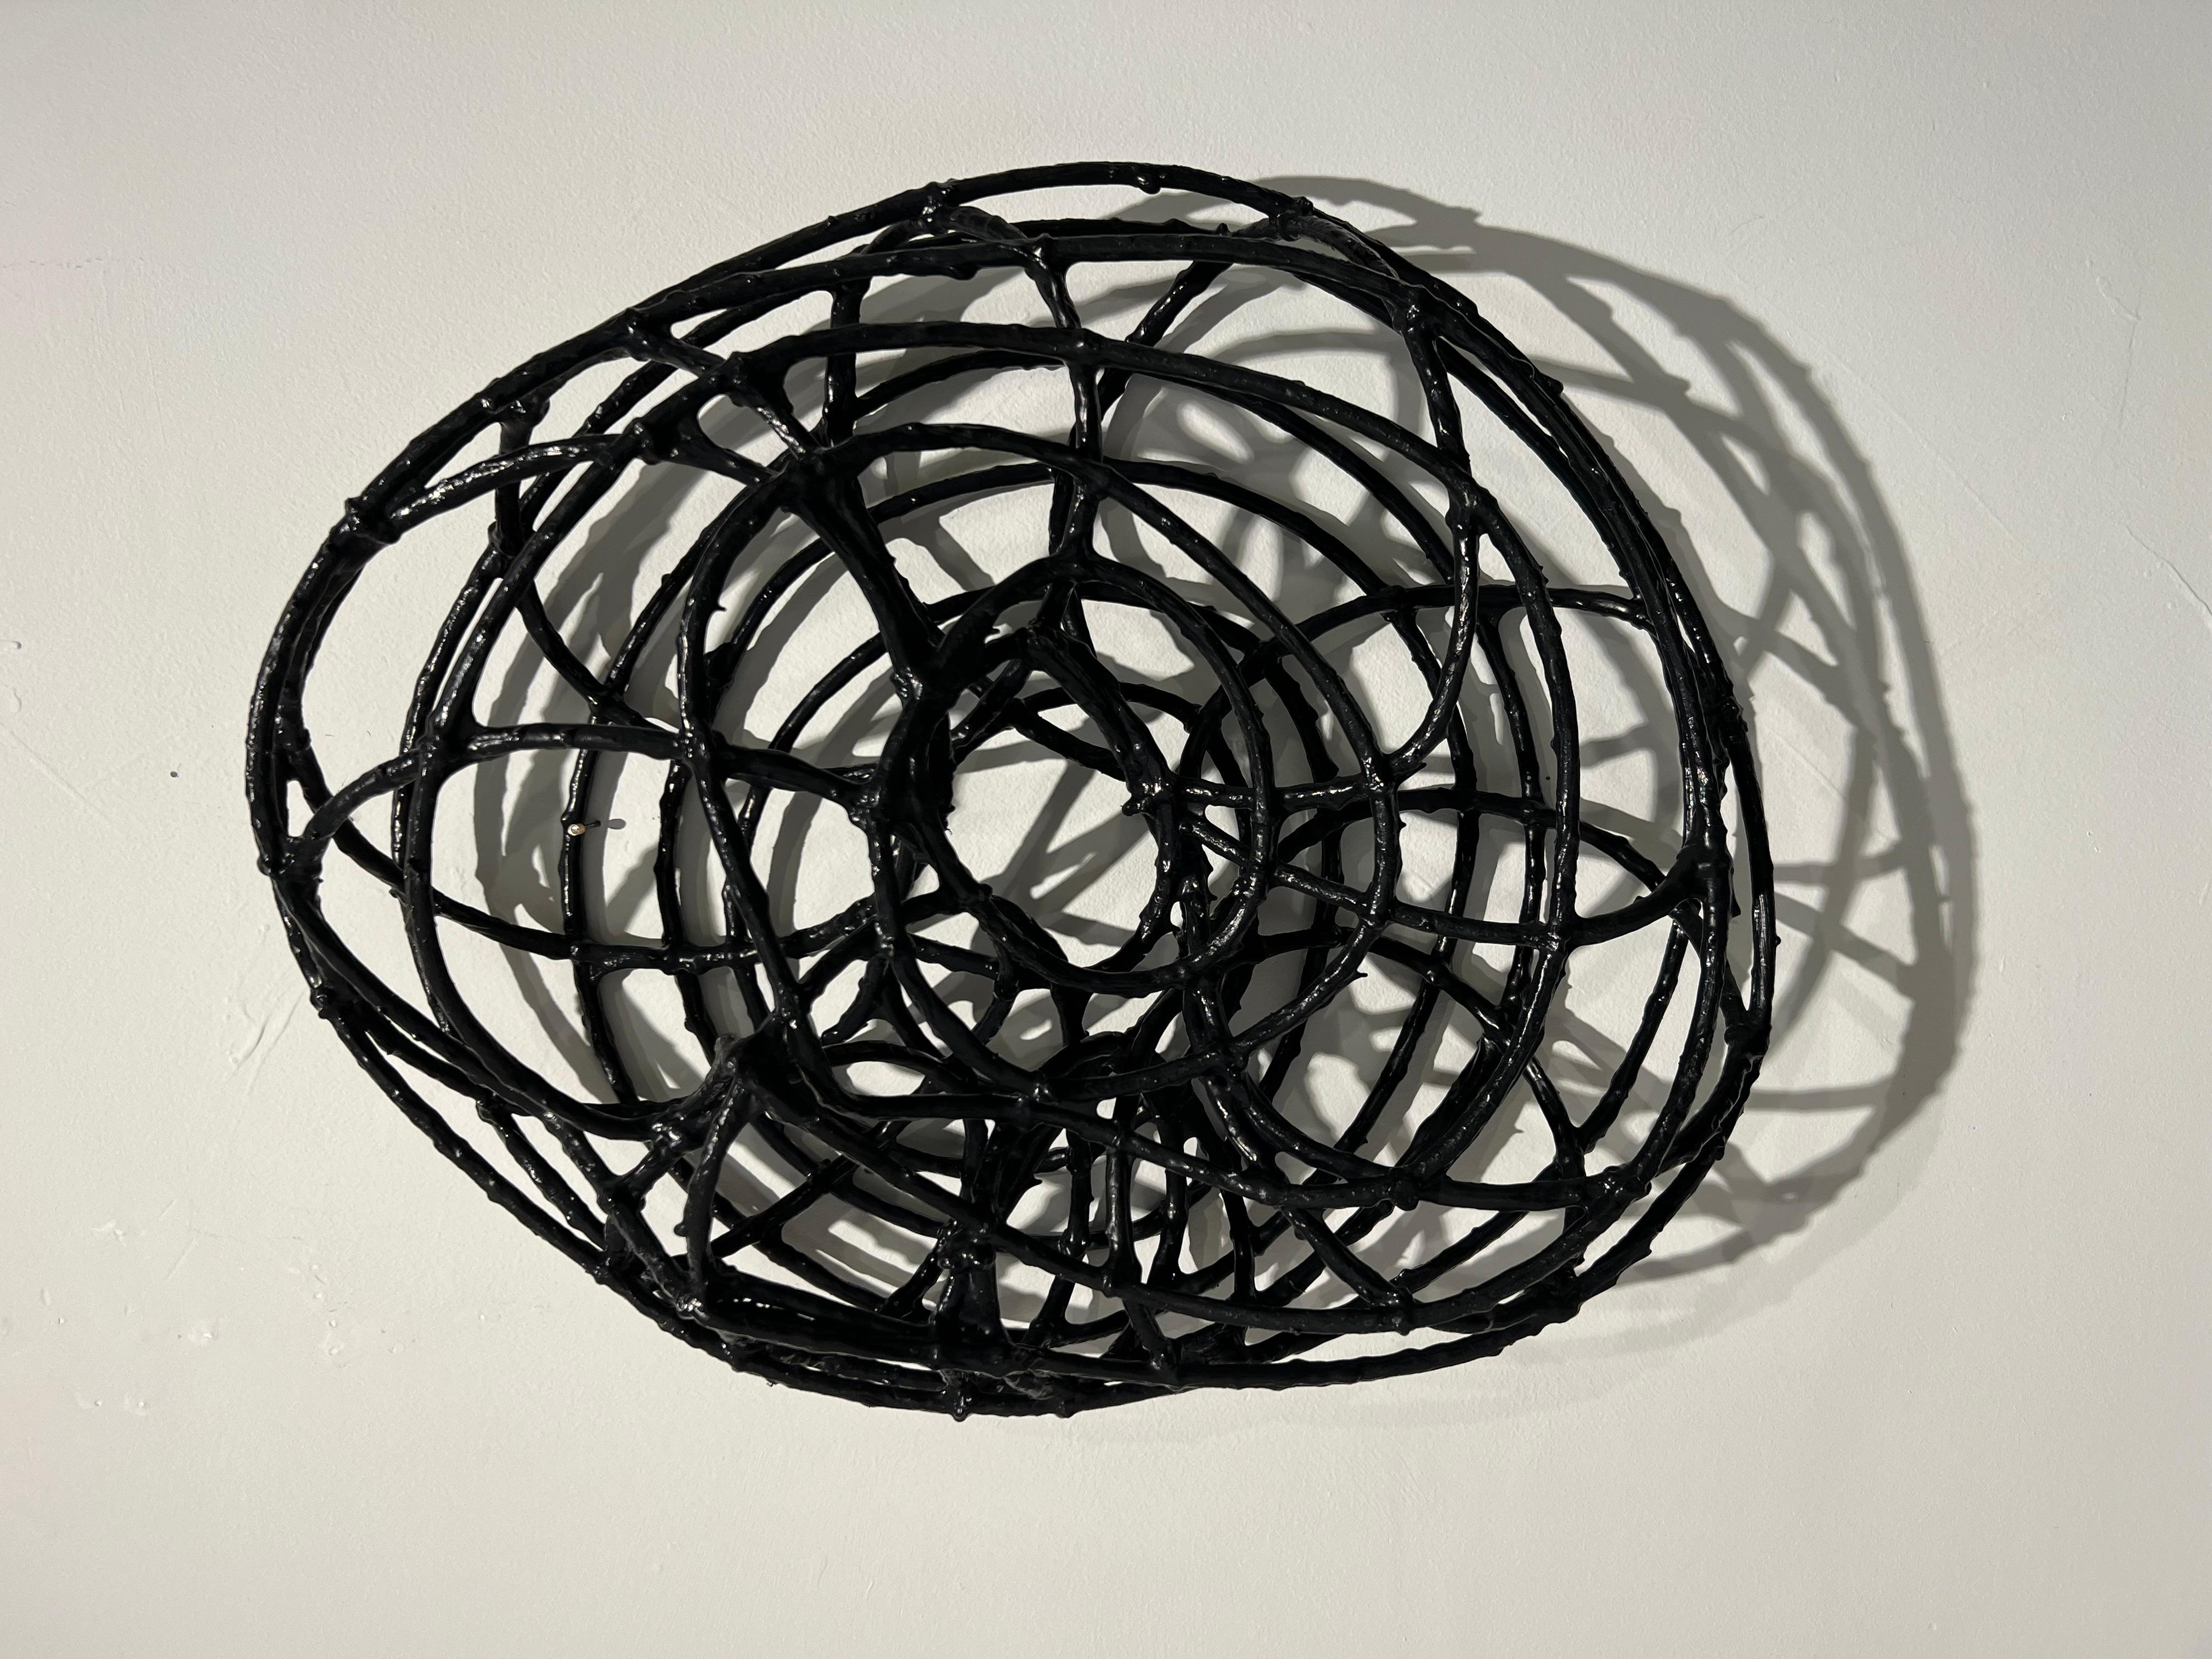 Eileen Braun Abstract Sculpture - Spin